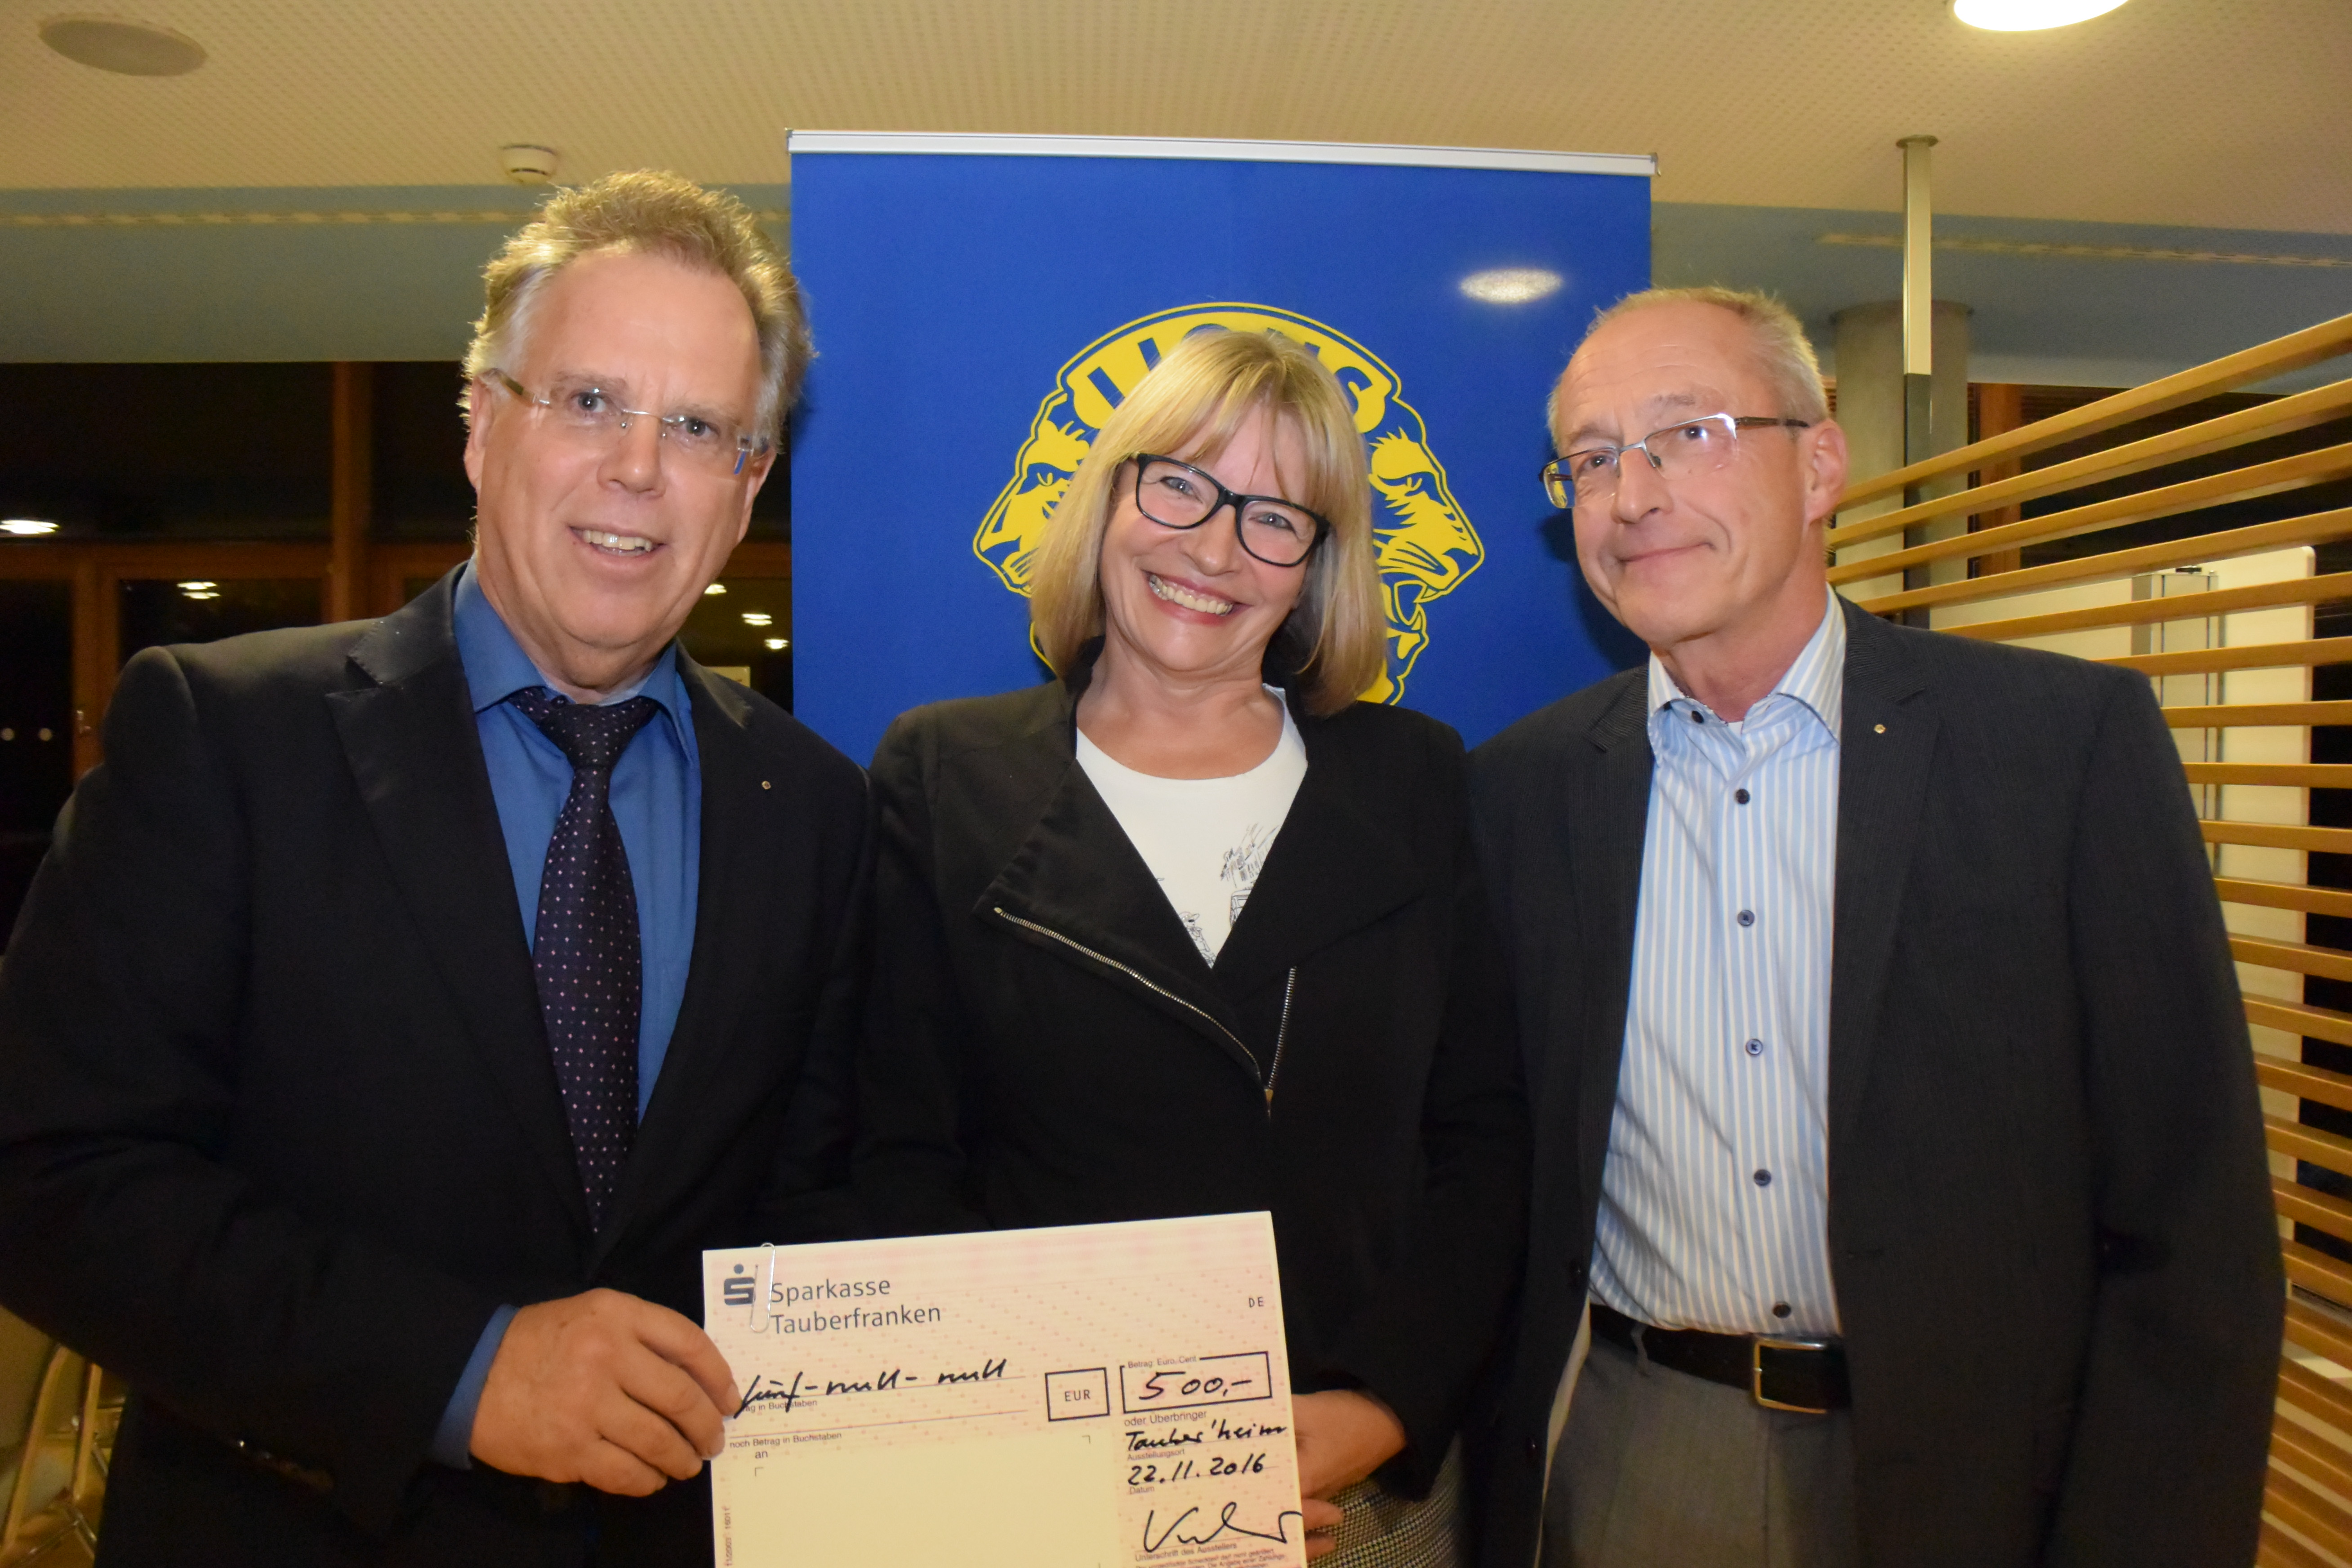 Lionspräsident Reinhard Frank (li) mit Anita Bart (Sambia Hilfe) und Pastpräsident Hänsjörg Eisele (re)